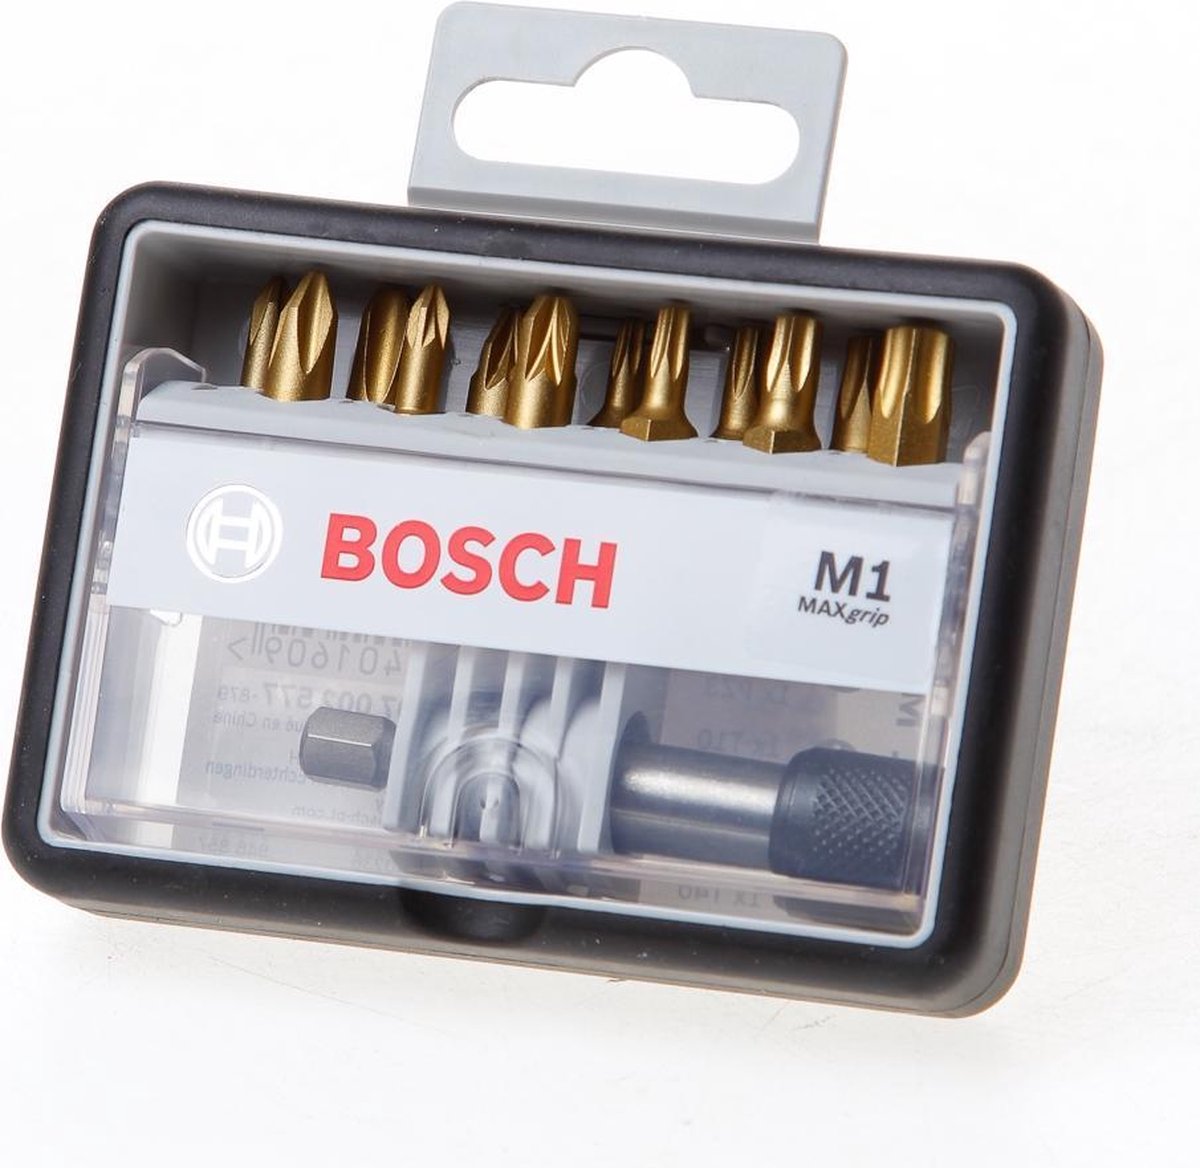 Bosch Bitset Max Grip 1 | Robustline | 13-Delig | 2607002577